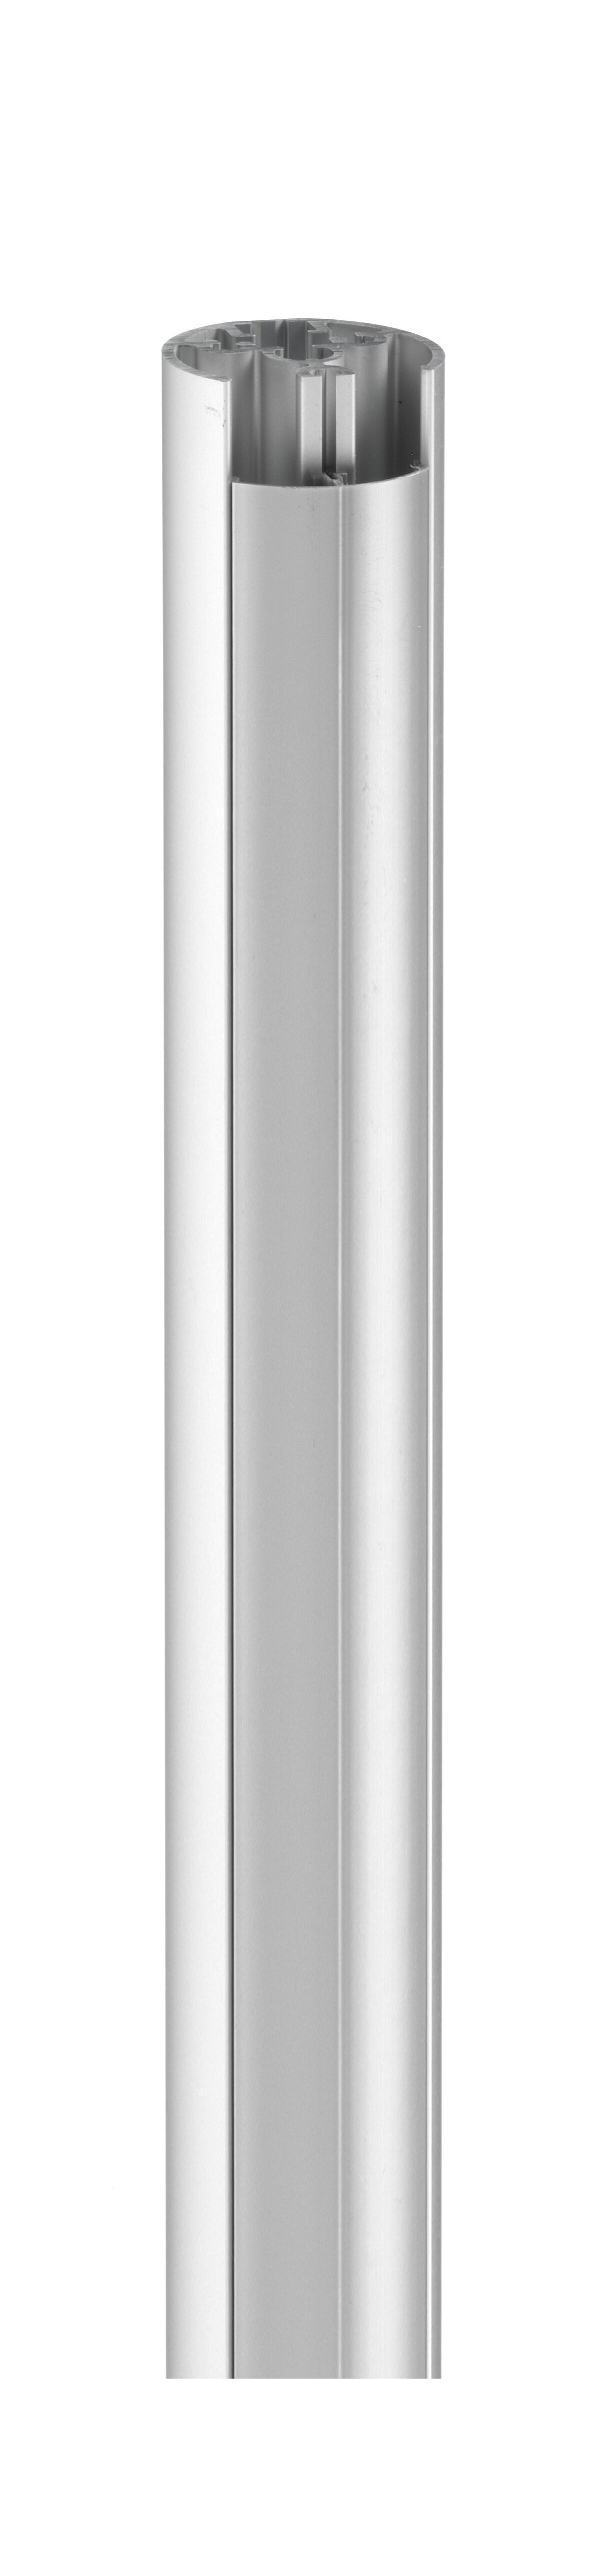 Vogel's PUC 2115 Pole 150 cm - Product